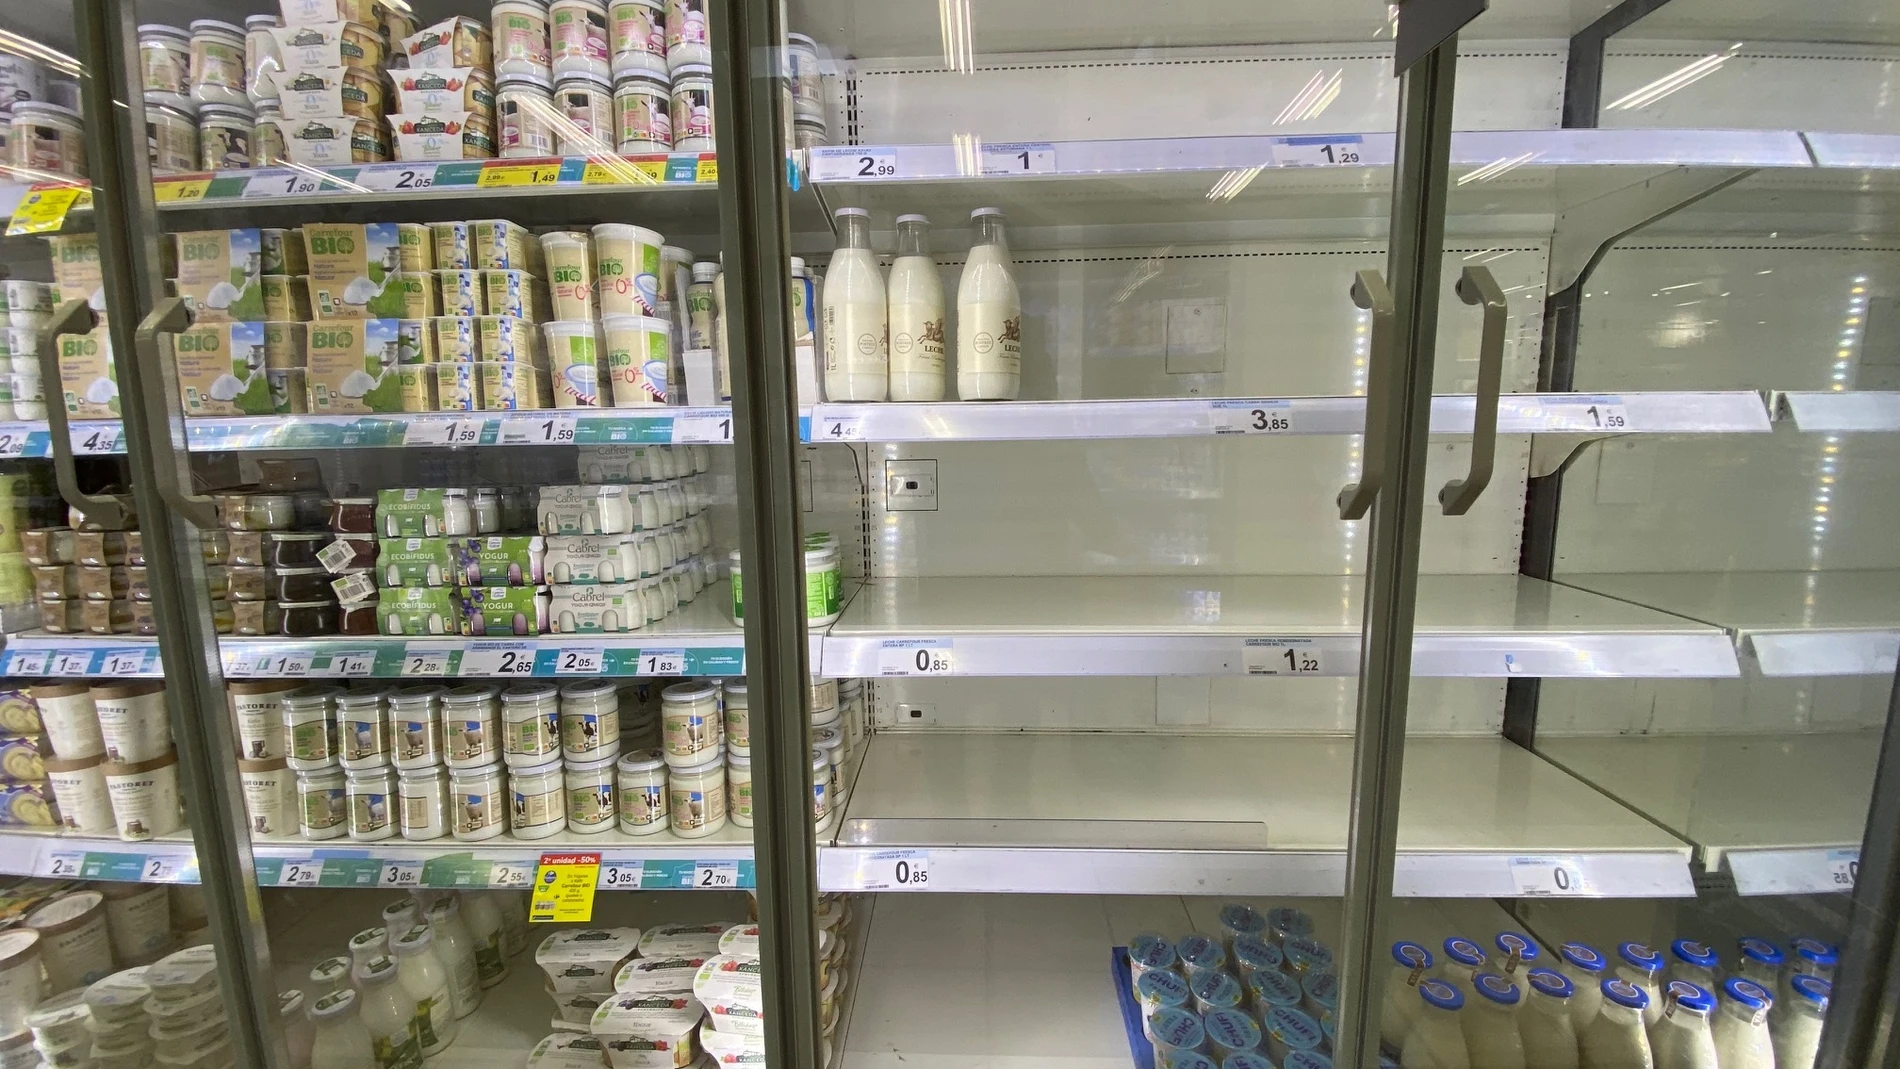 Estanterías de supermercados con estanterías vacías sobre todo de leche